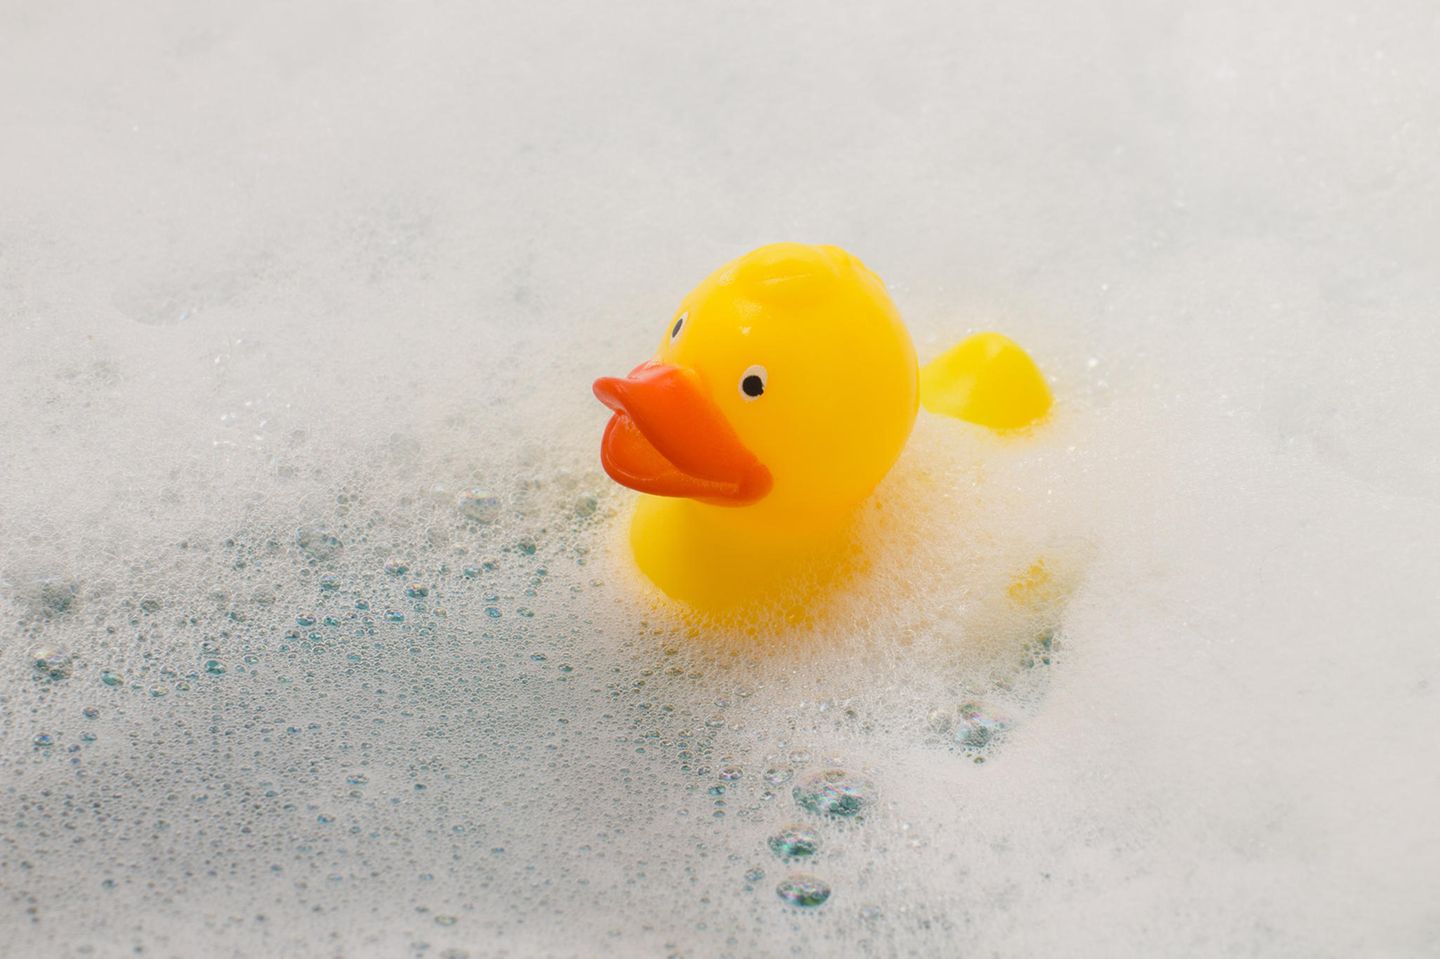 Mädchen ertrinkt in Badewanne: Spielzeug-Ente in Badewanne